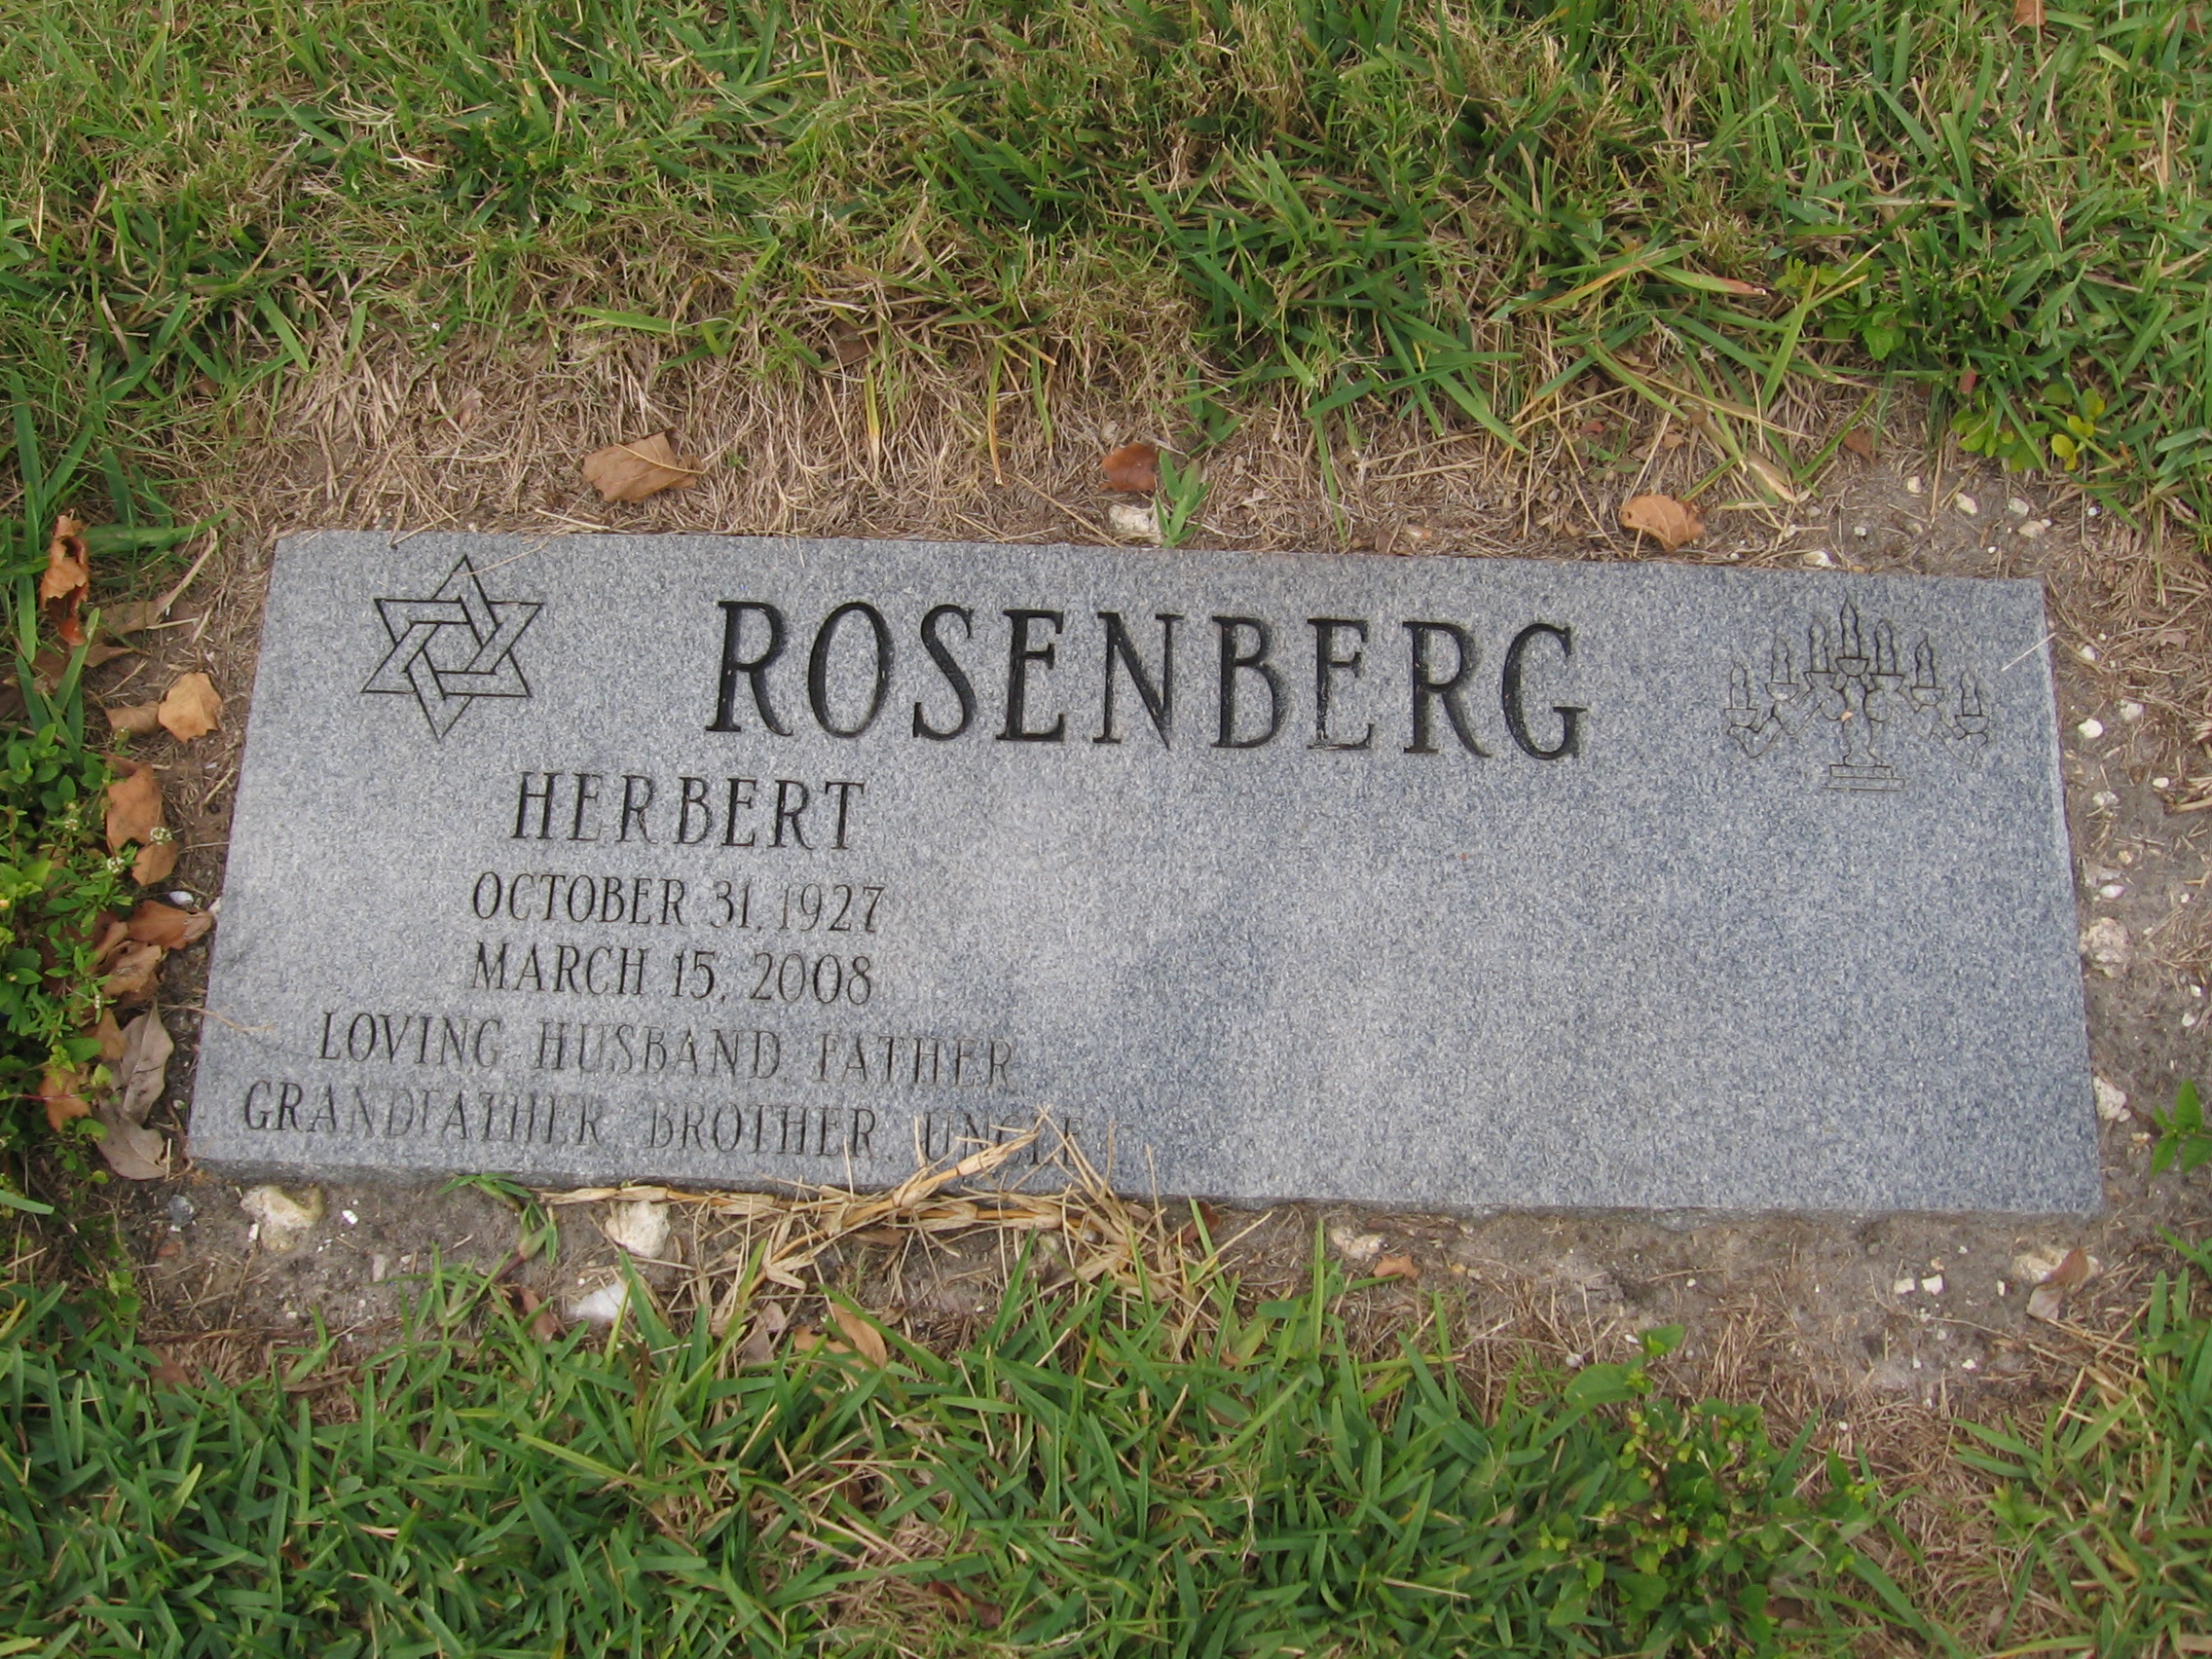 Herbert Rosenberg